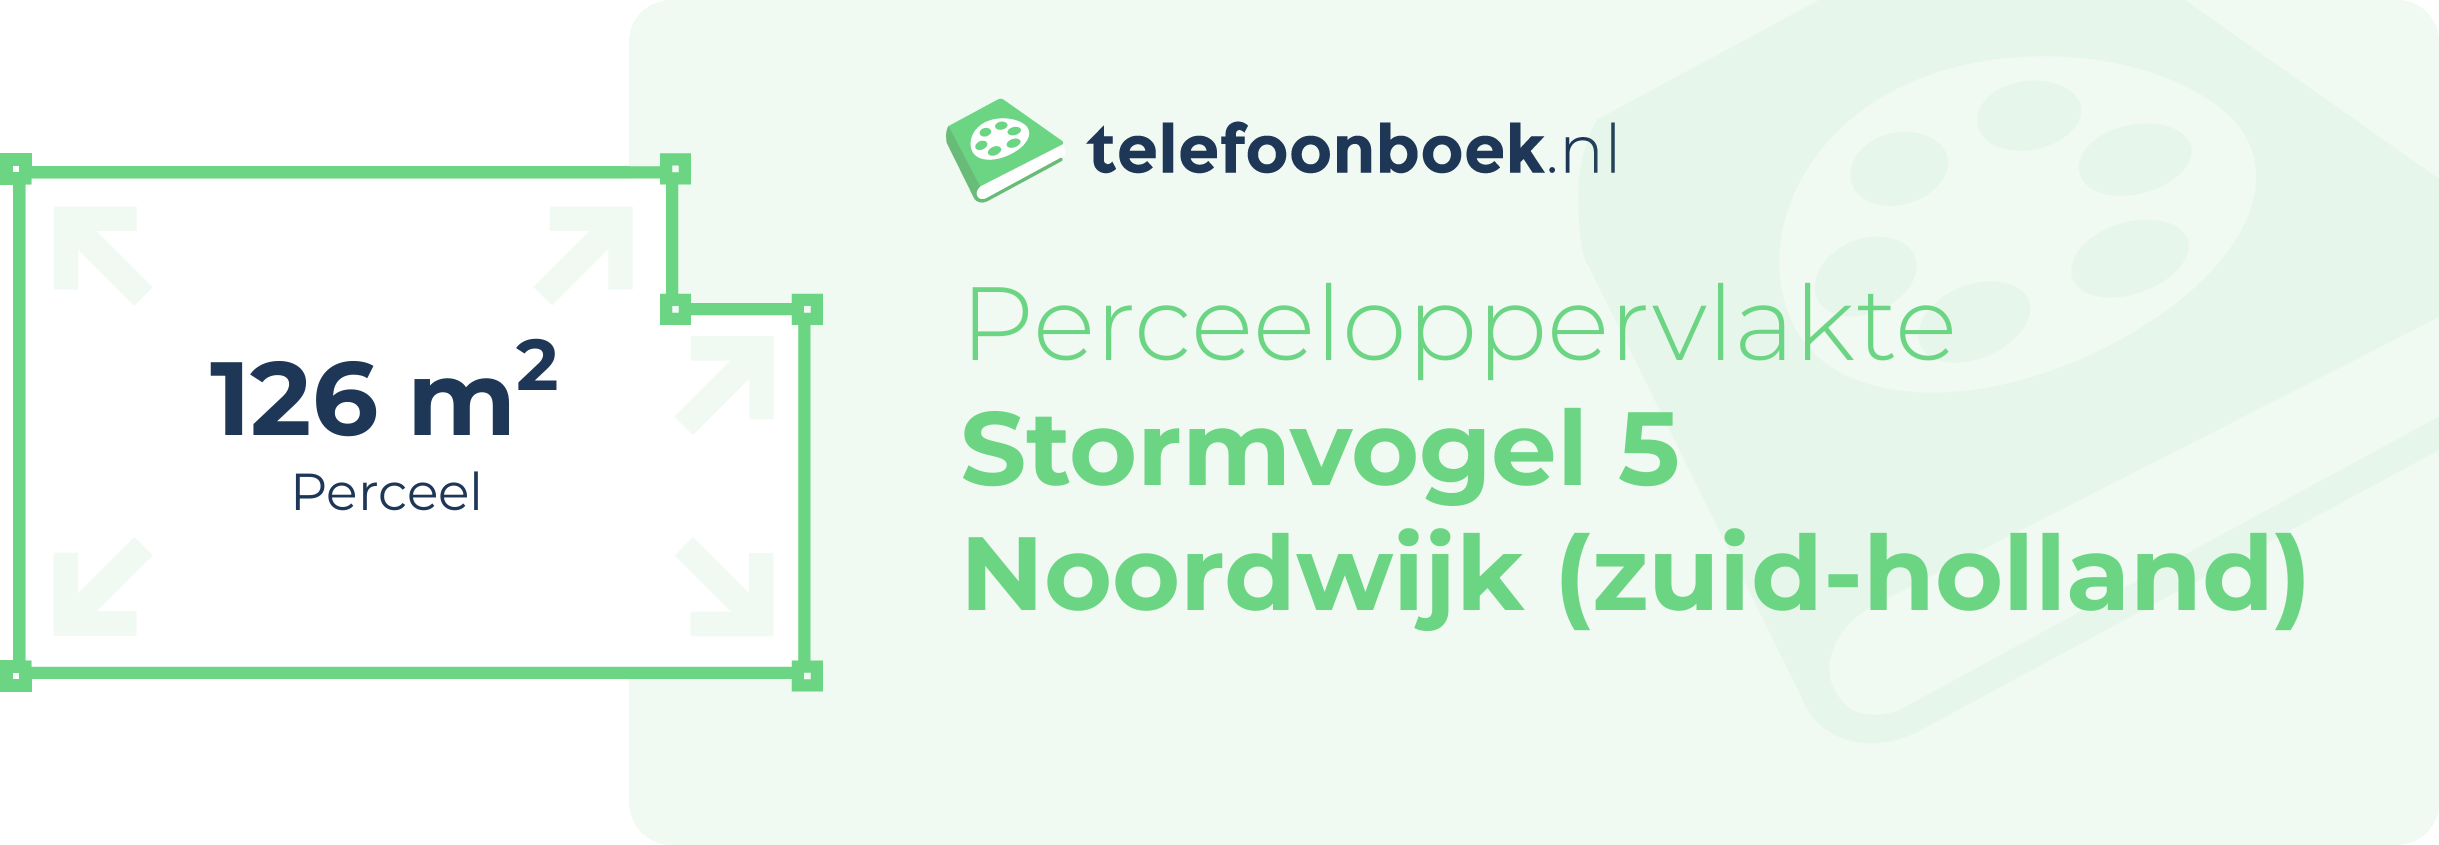 Perceeloppervlakte Stormvogel 5 Noordwijk (Zuid-Holland)